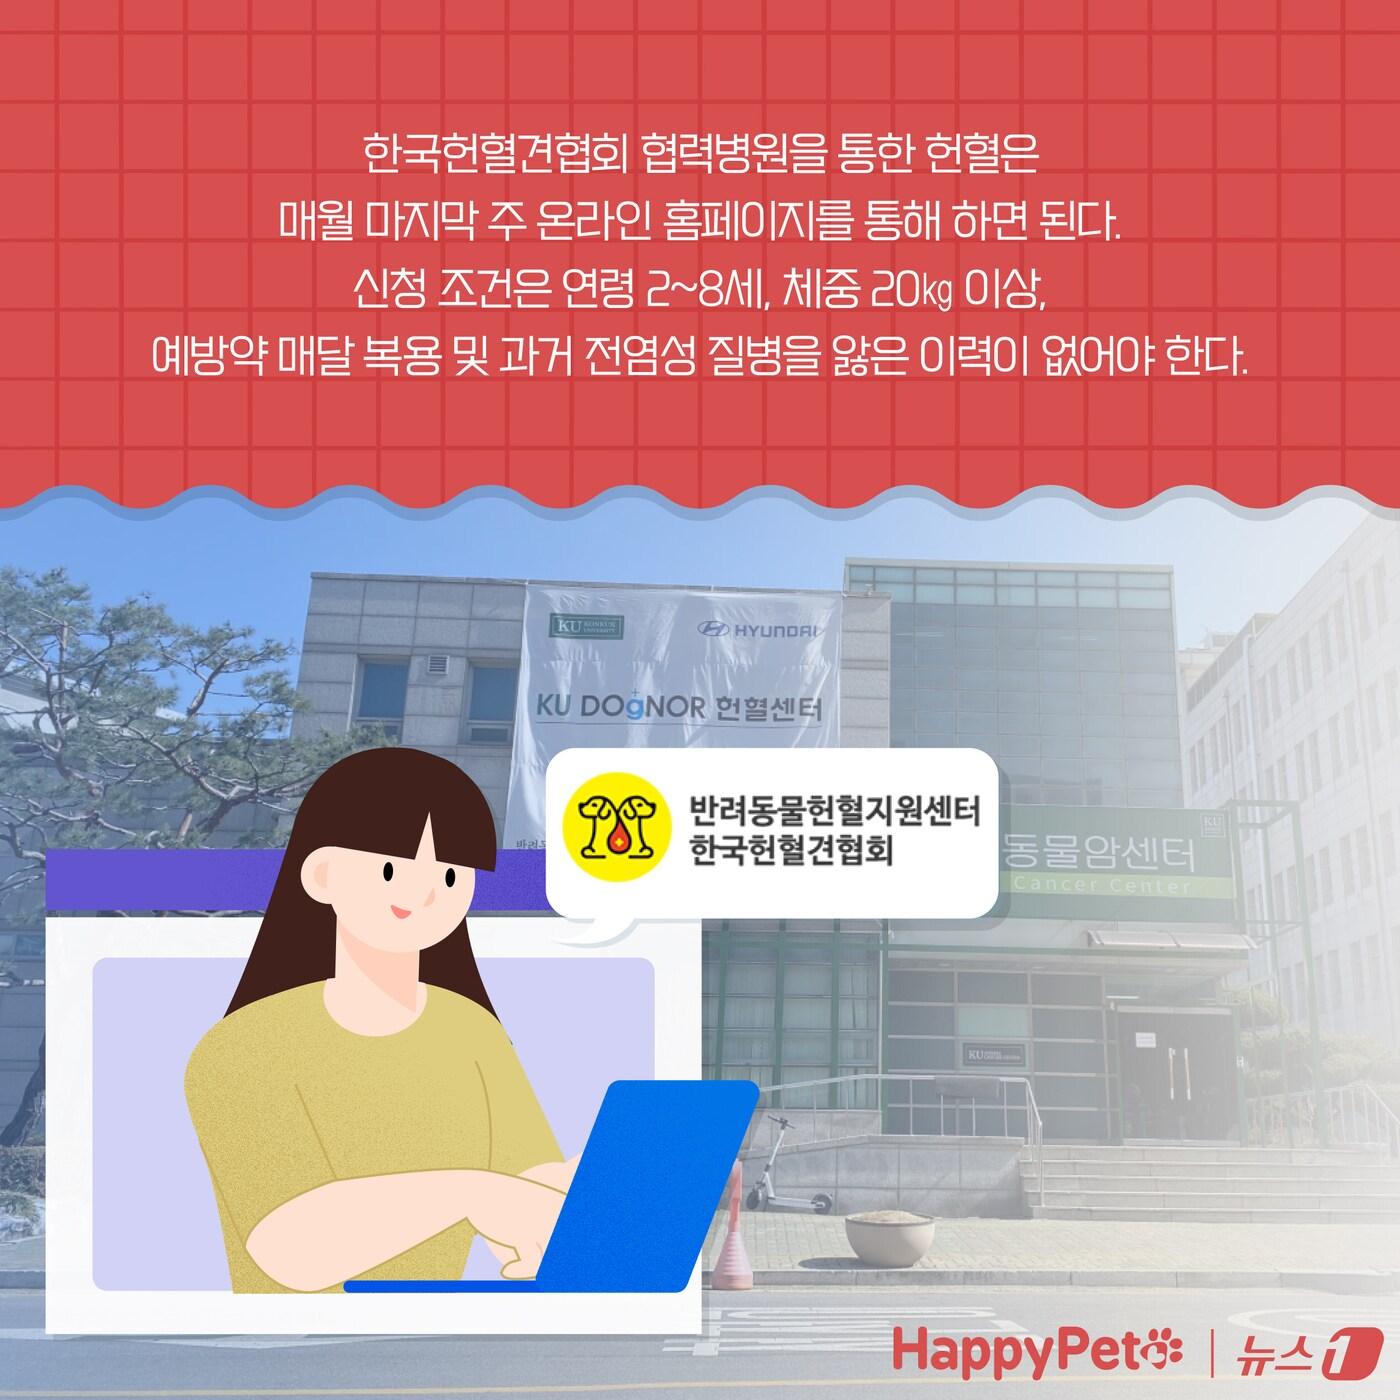 복지와 건강 모두 챙기개&#39;…반려동물 헌혈에 동참하세요 ⓒ News1 양혜림 디자이너